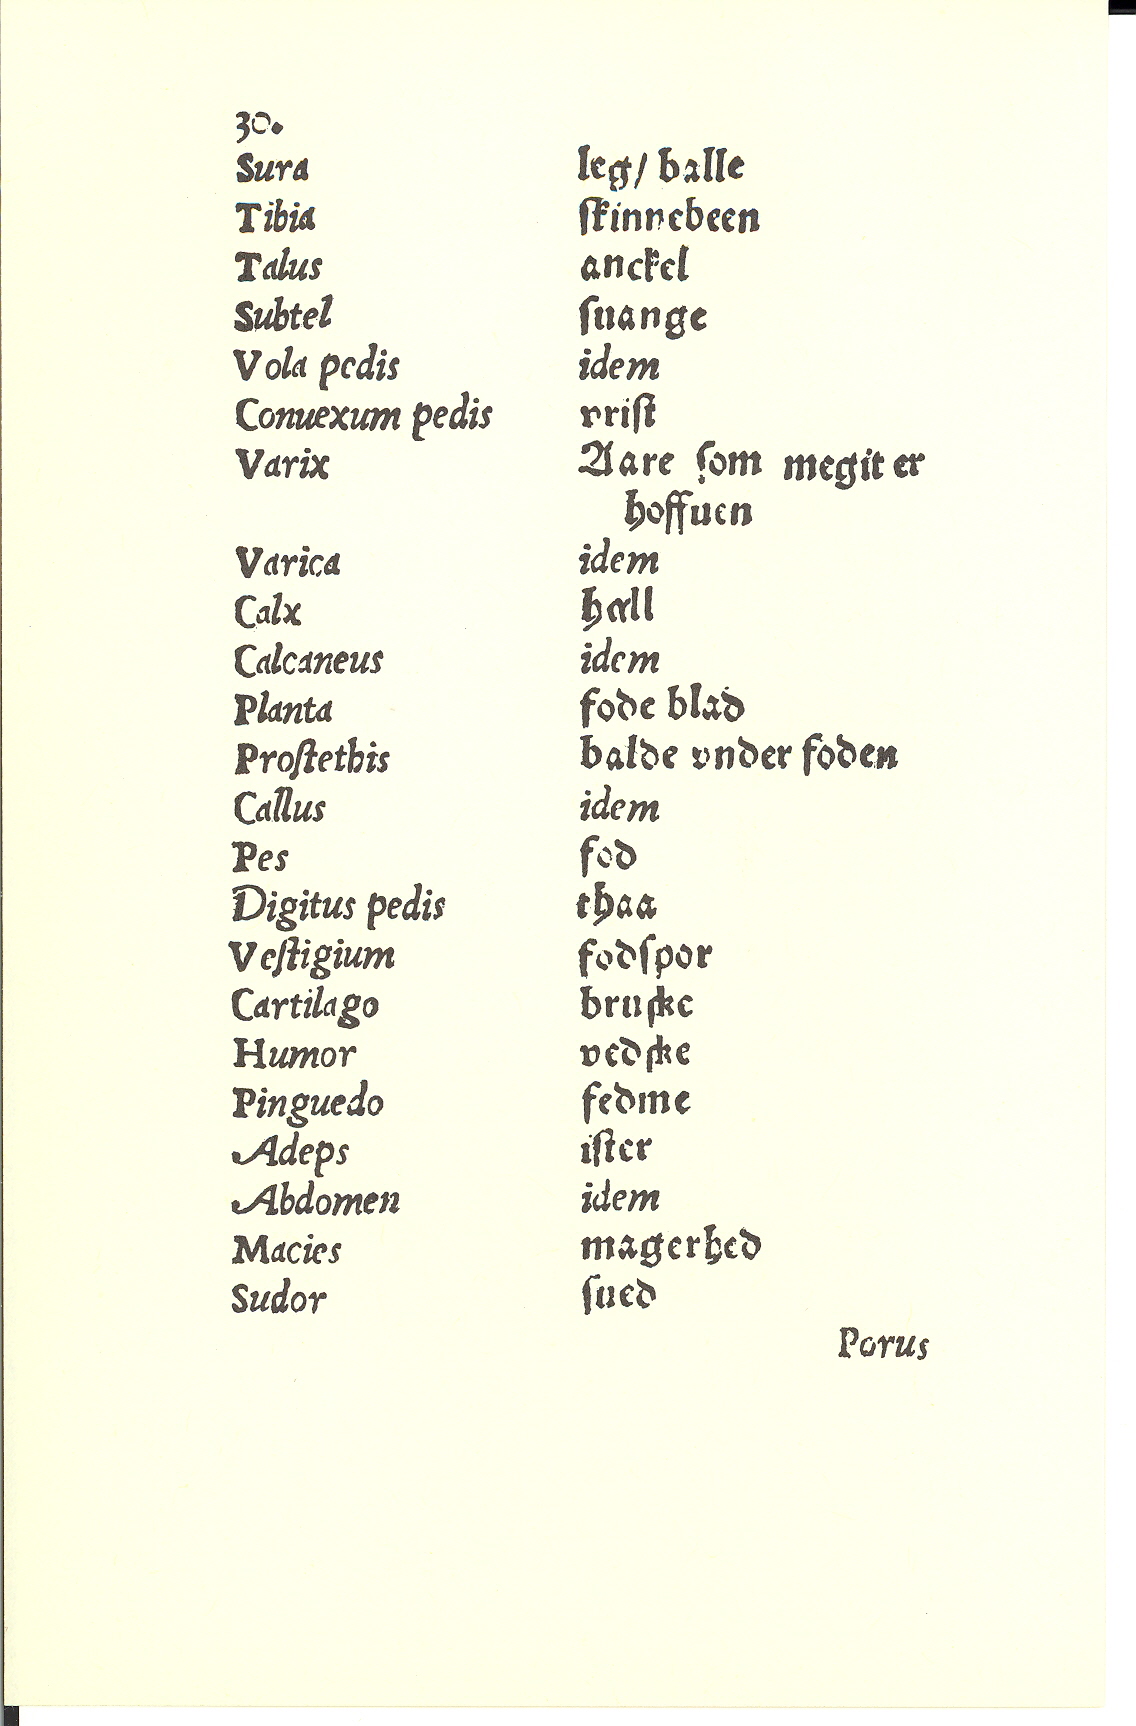 Tursen 1561, Side: 30